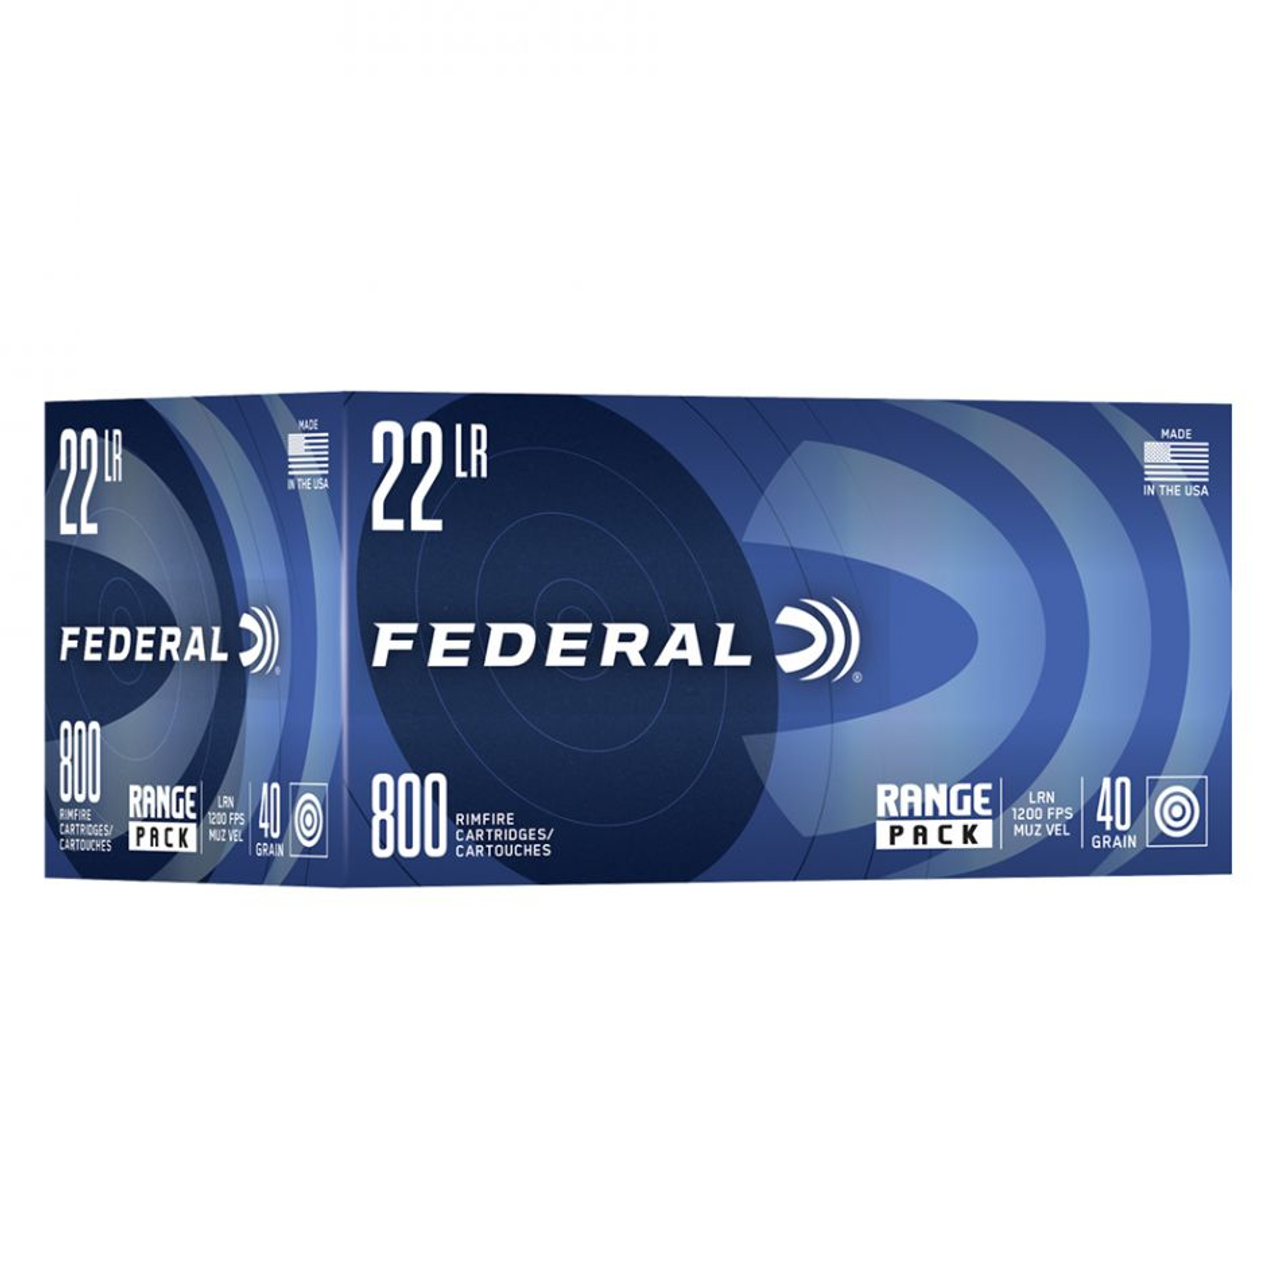 Federal 22LR Range Pack 40 Gr LRN HV, 800 Rnds